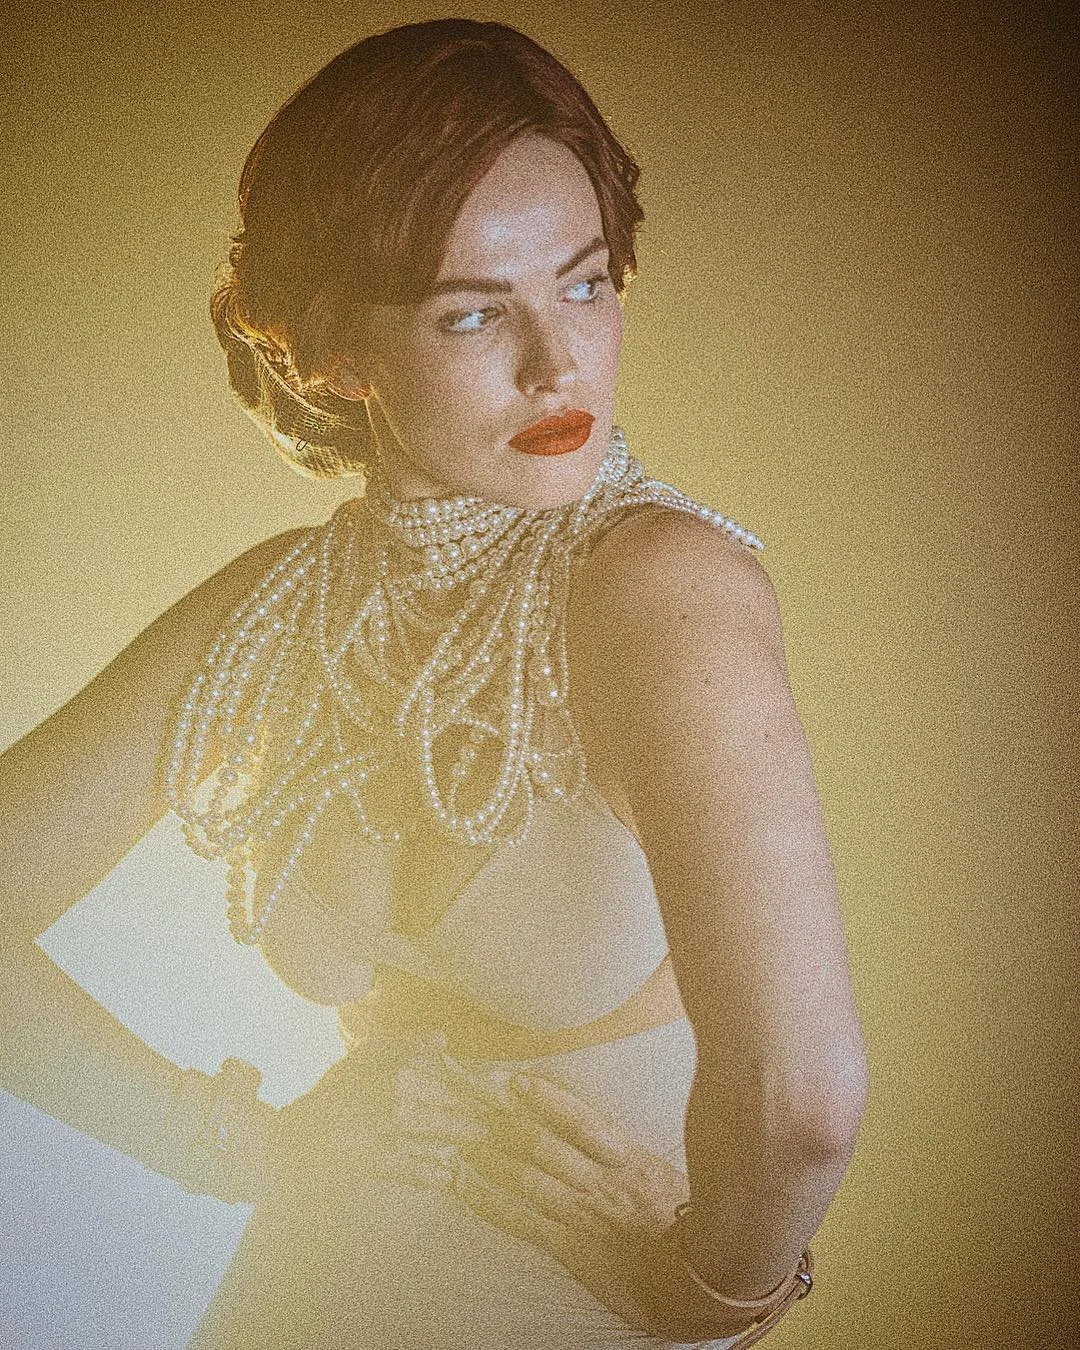 Даша Астафьева в образе актрисы 'золотого века Голливуда' завернулась в жемчужное ожерелье - фото 423866